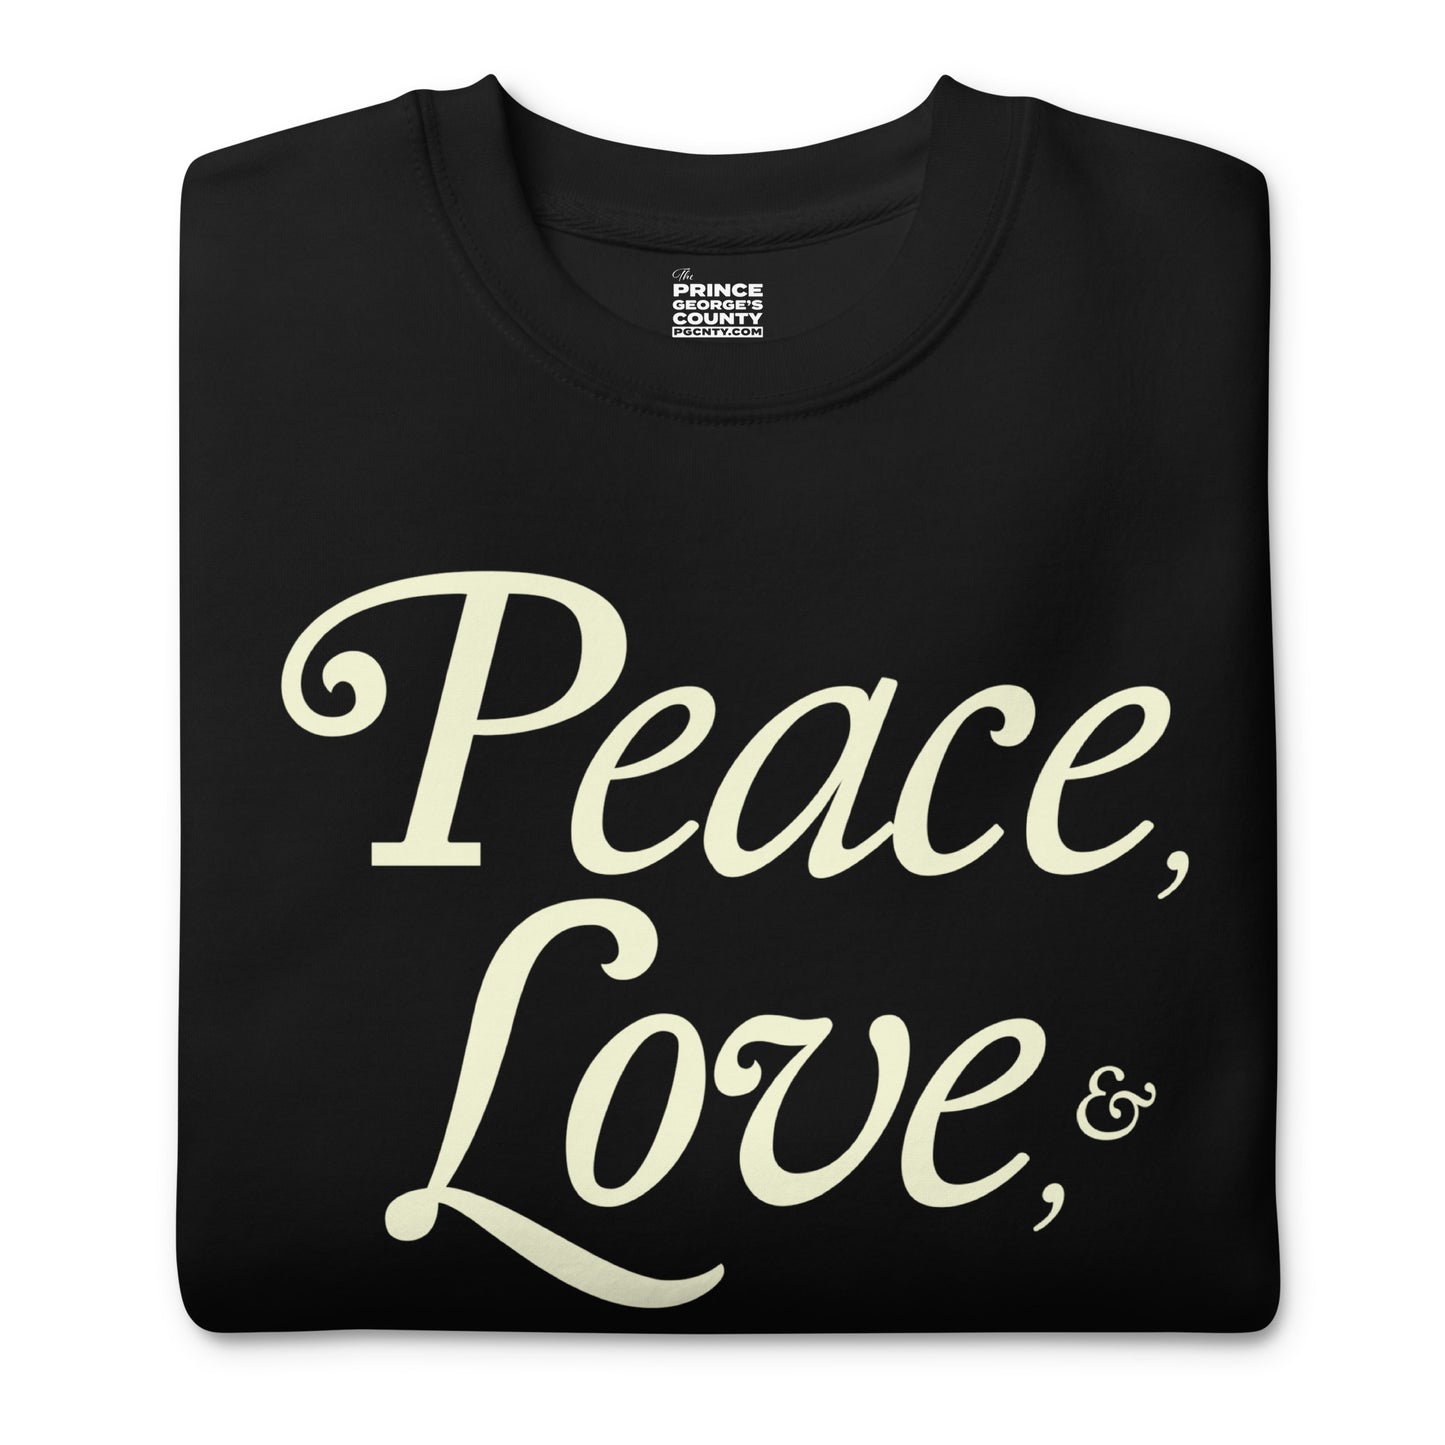 Peace, Love, & PG Unisex Premium Sweatshirt